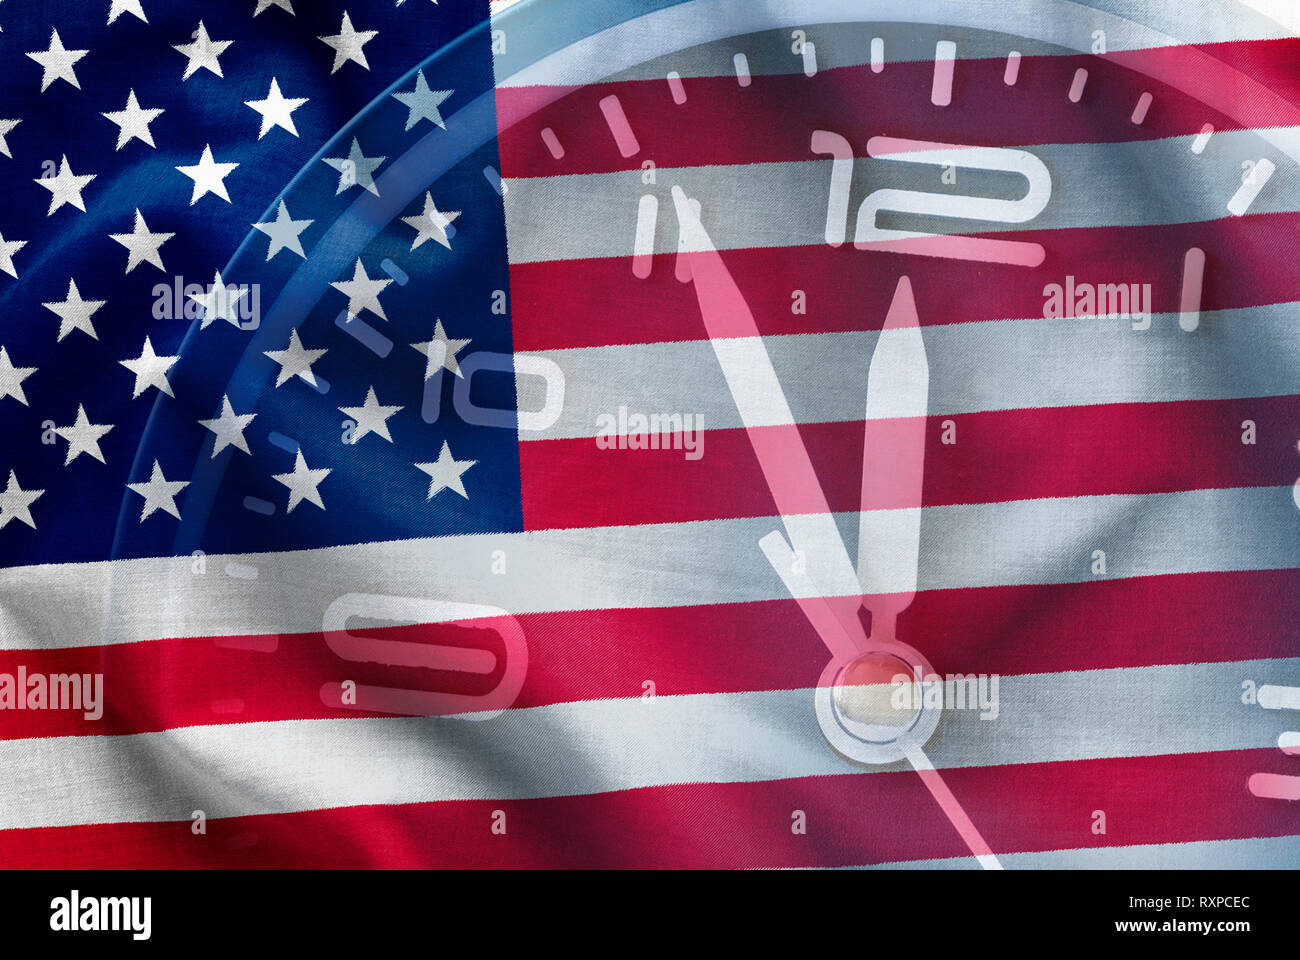 Composito della bandiera americana, a stelle e strisce, vecchia gloria, con un quadrante di orologio che mostra il tempo da cinque a dodici in una immagine concettuale Foto Stock